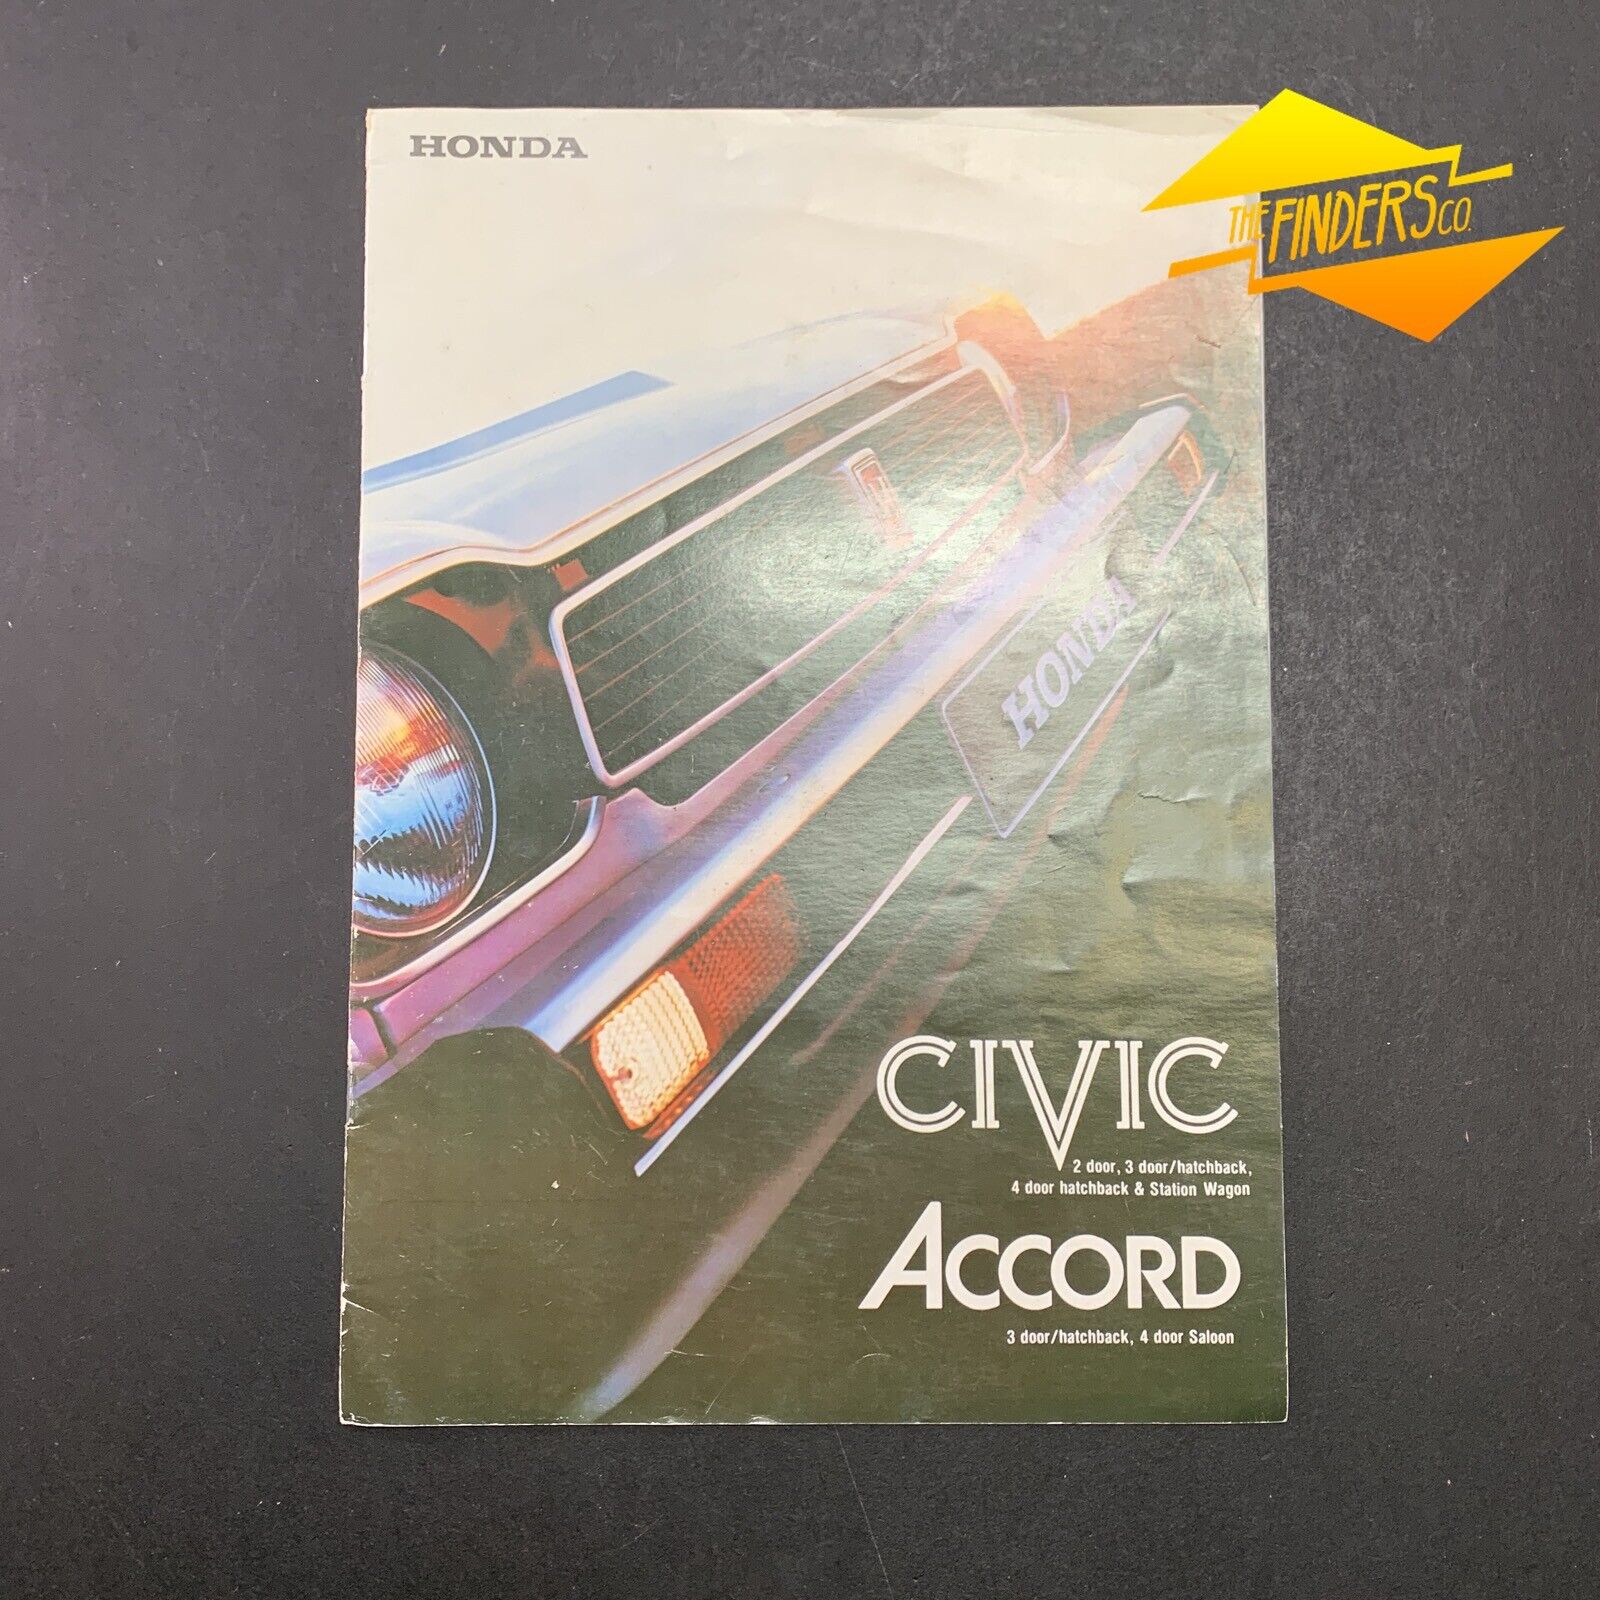 1978 HONDA CIVIC & ACCORD ORIGINAL AUSTRALIAN SALES BROCHURE JAPAN JDM 